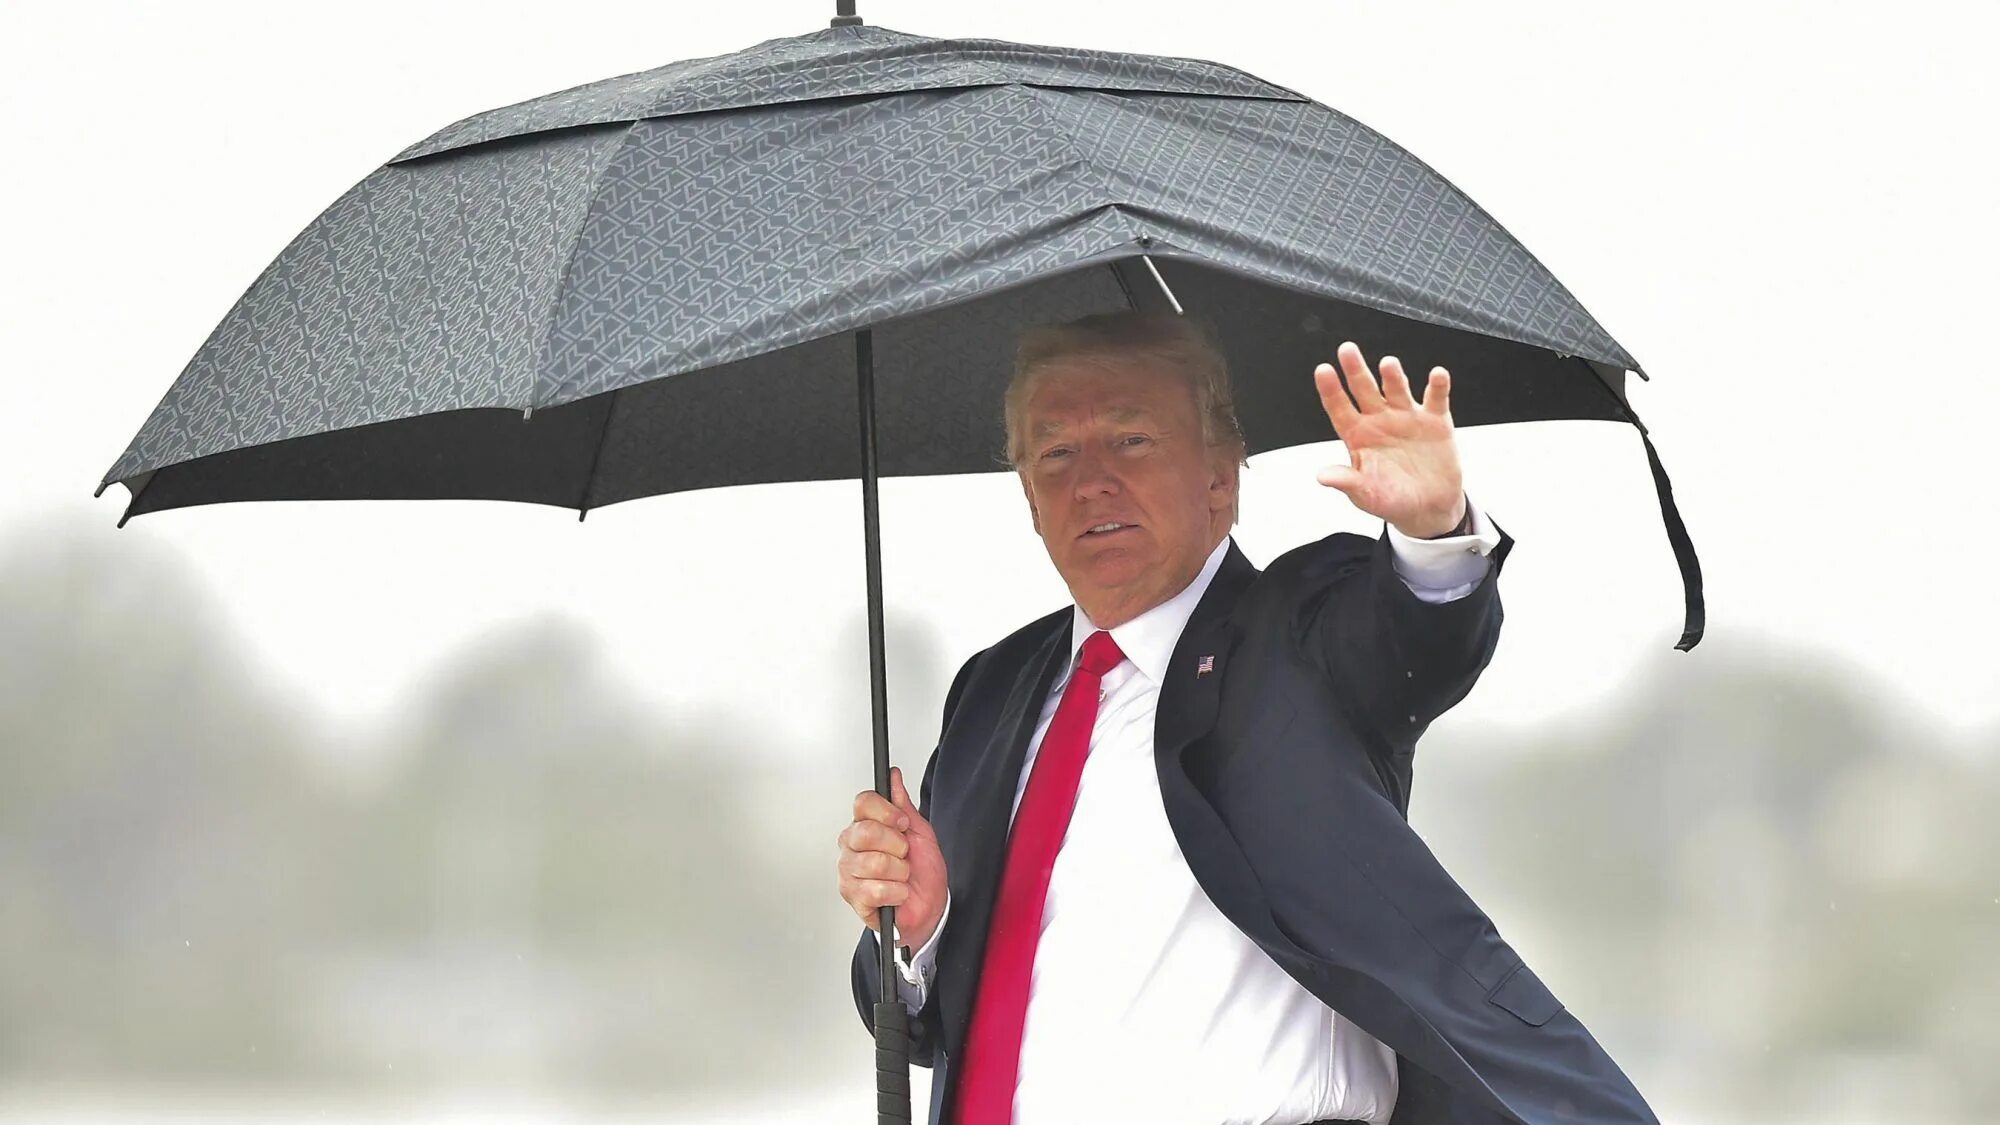 Держит зонтик. Человек с зонтиком. Трамп с зонтом. Роль зонтика